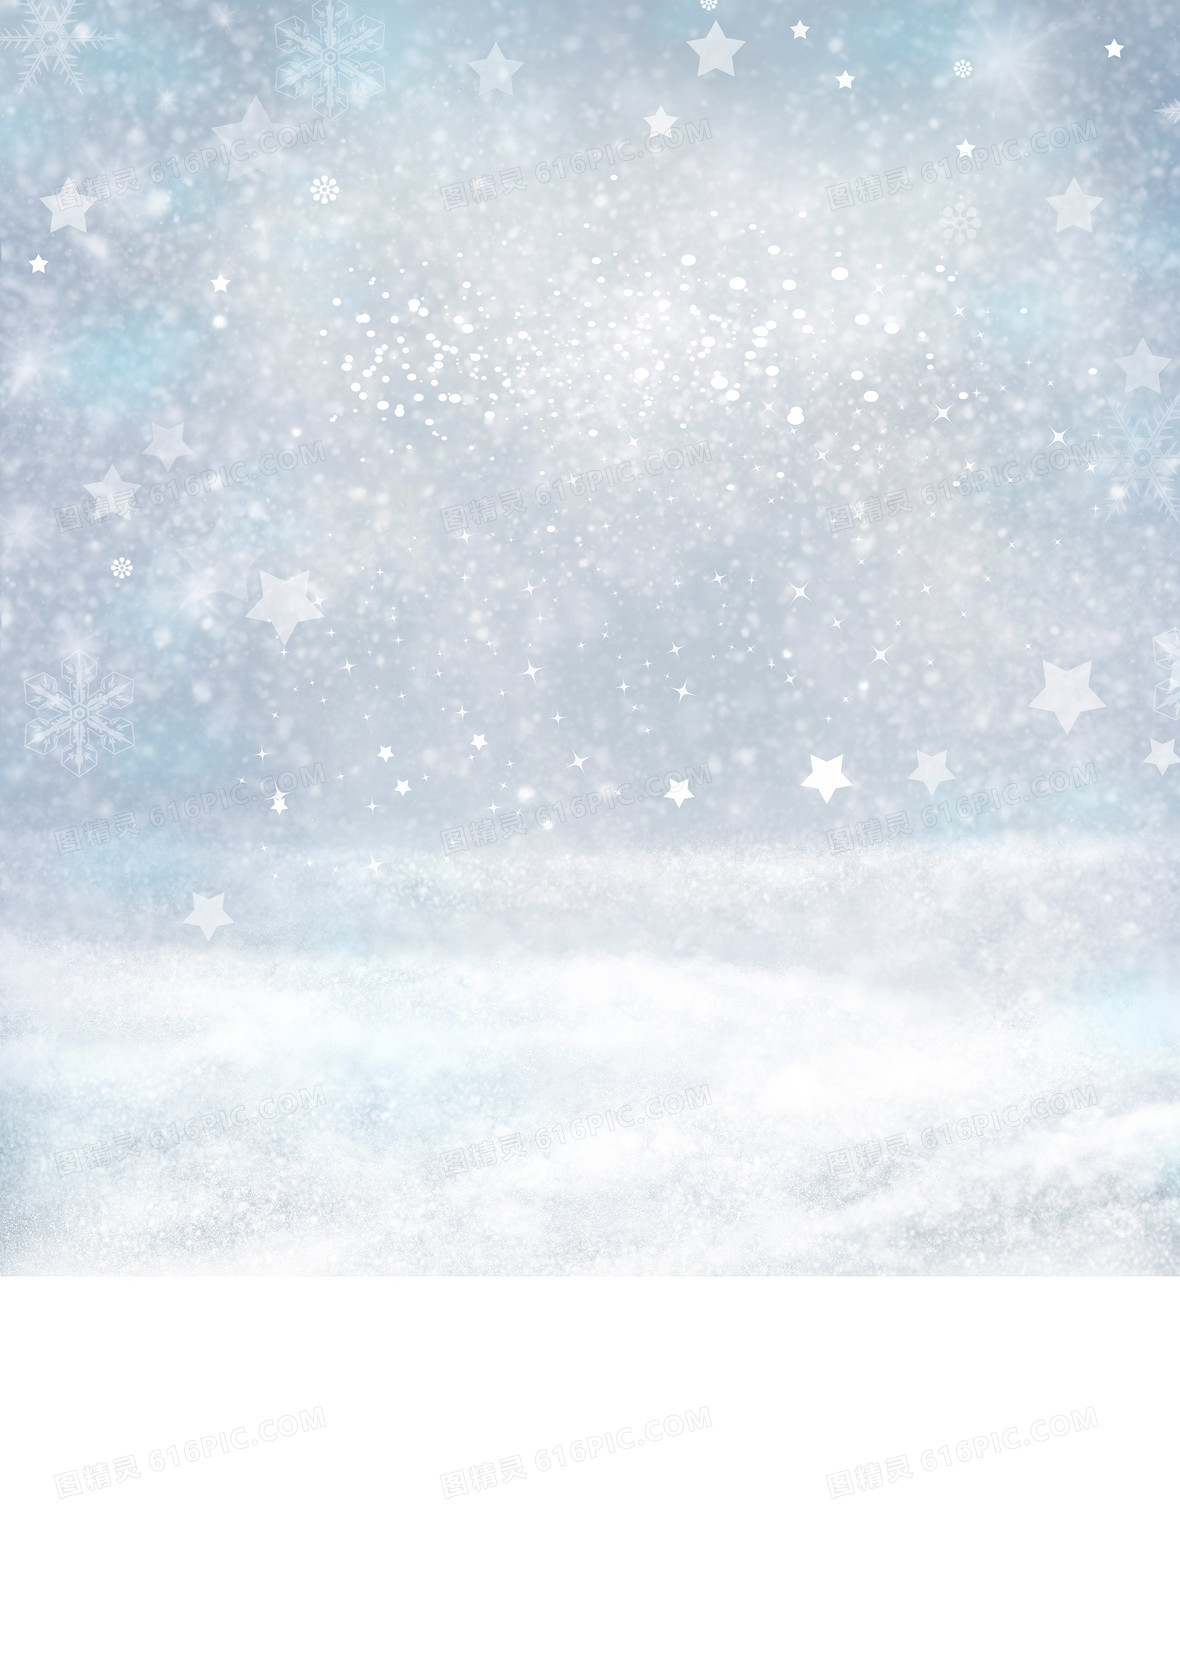 唯美冬天飘雪中的房屋背景图片下载_1920x700像素jpg格式_编号vjqfmk5